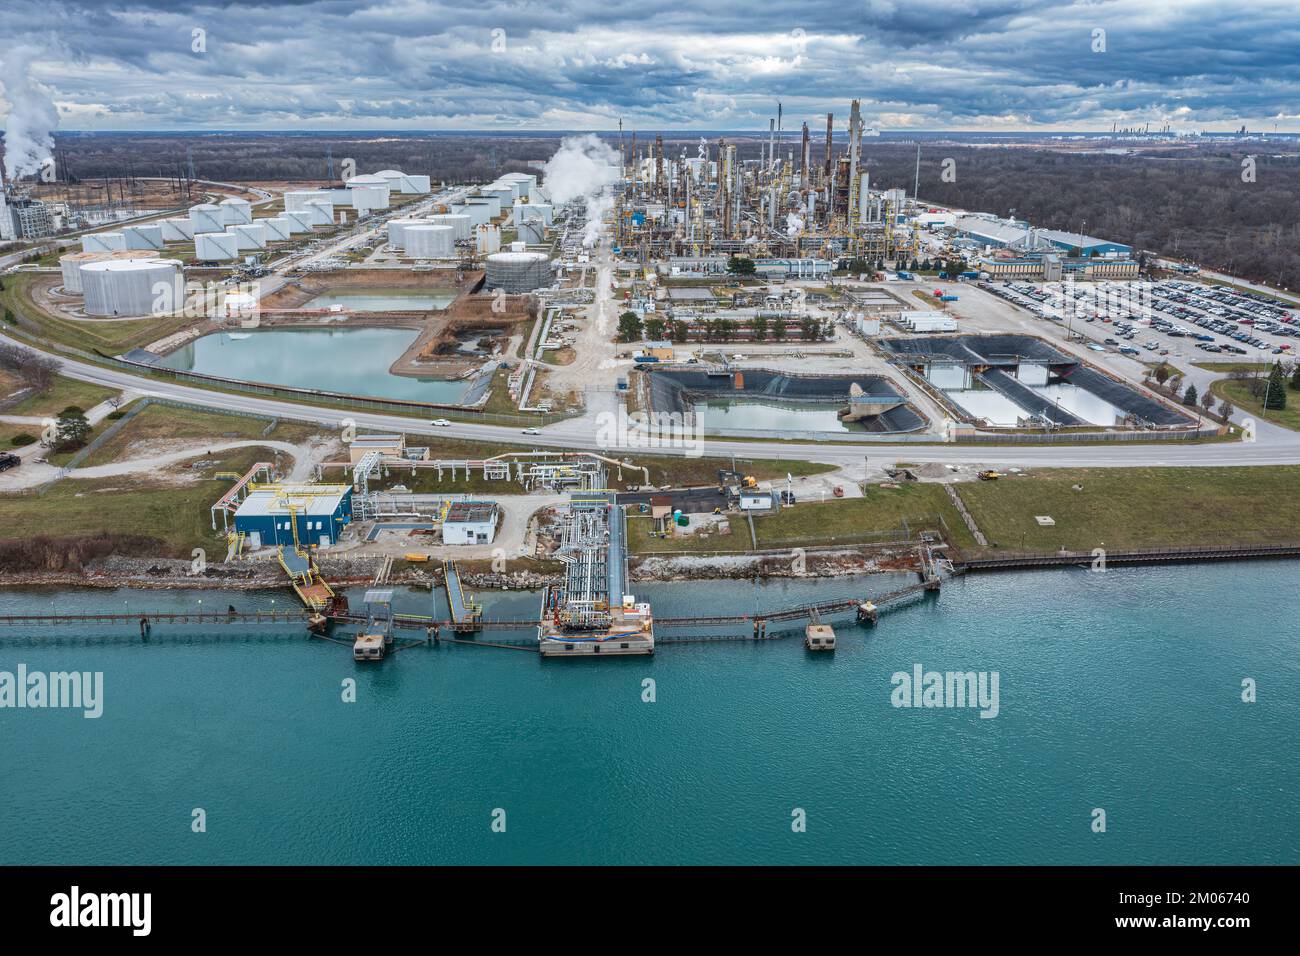 Die Raffinerie Suncor Sarnia produziert Benzin, Kerosin, Düsenöl und Dieselkraftstoffe in Kanada am Ufer der St. Clair River/Region Der Großen Seen Stockfoto